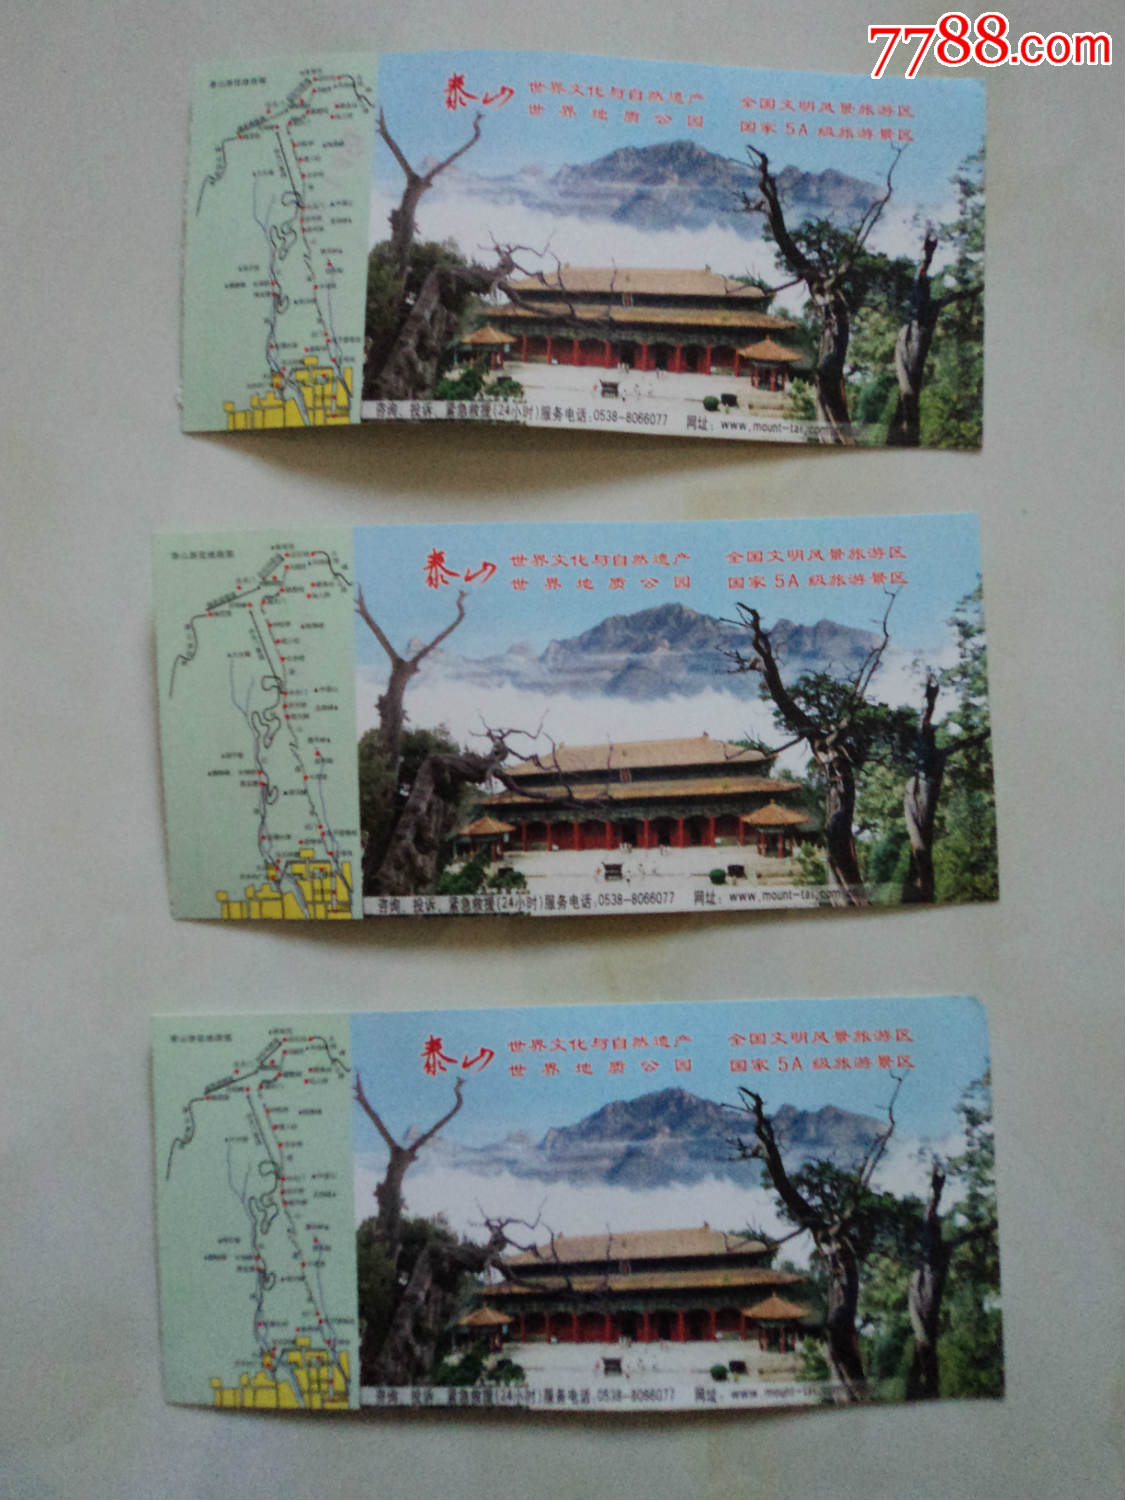 上海辰山植物园门票价格_大觉山漂流门票价格_千佛山门票价格